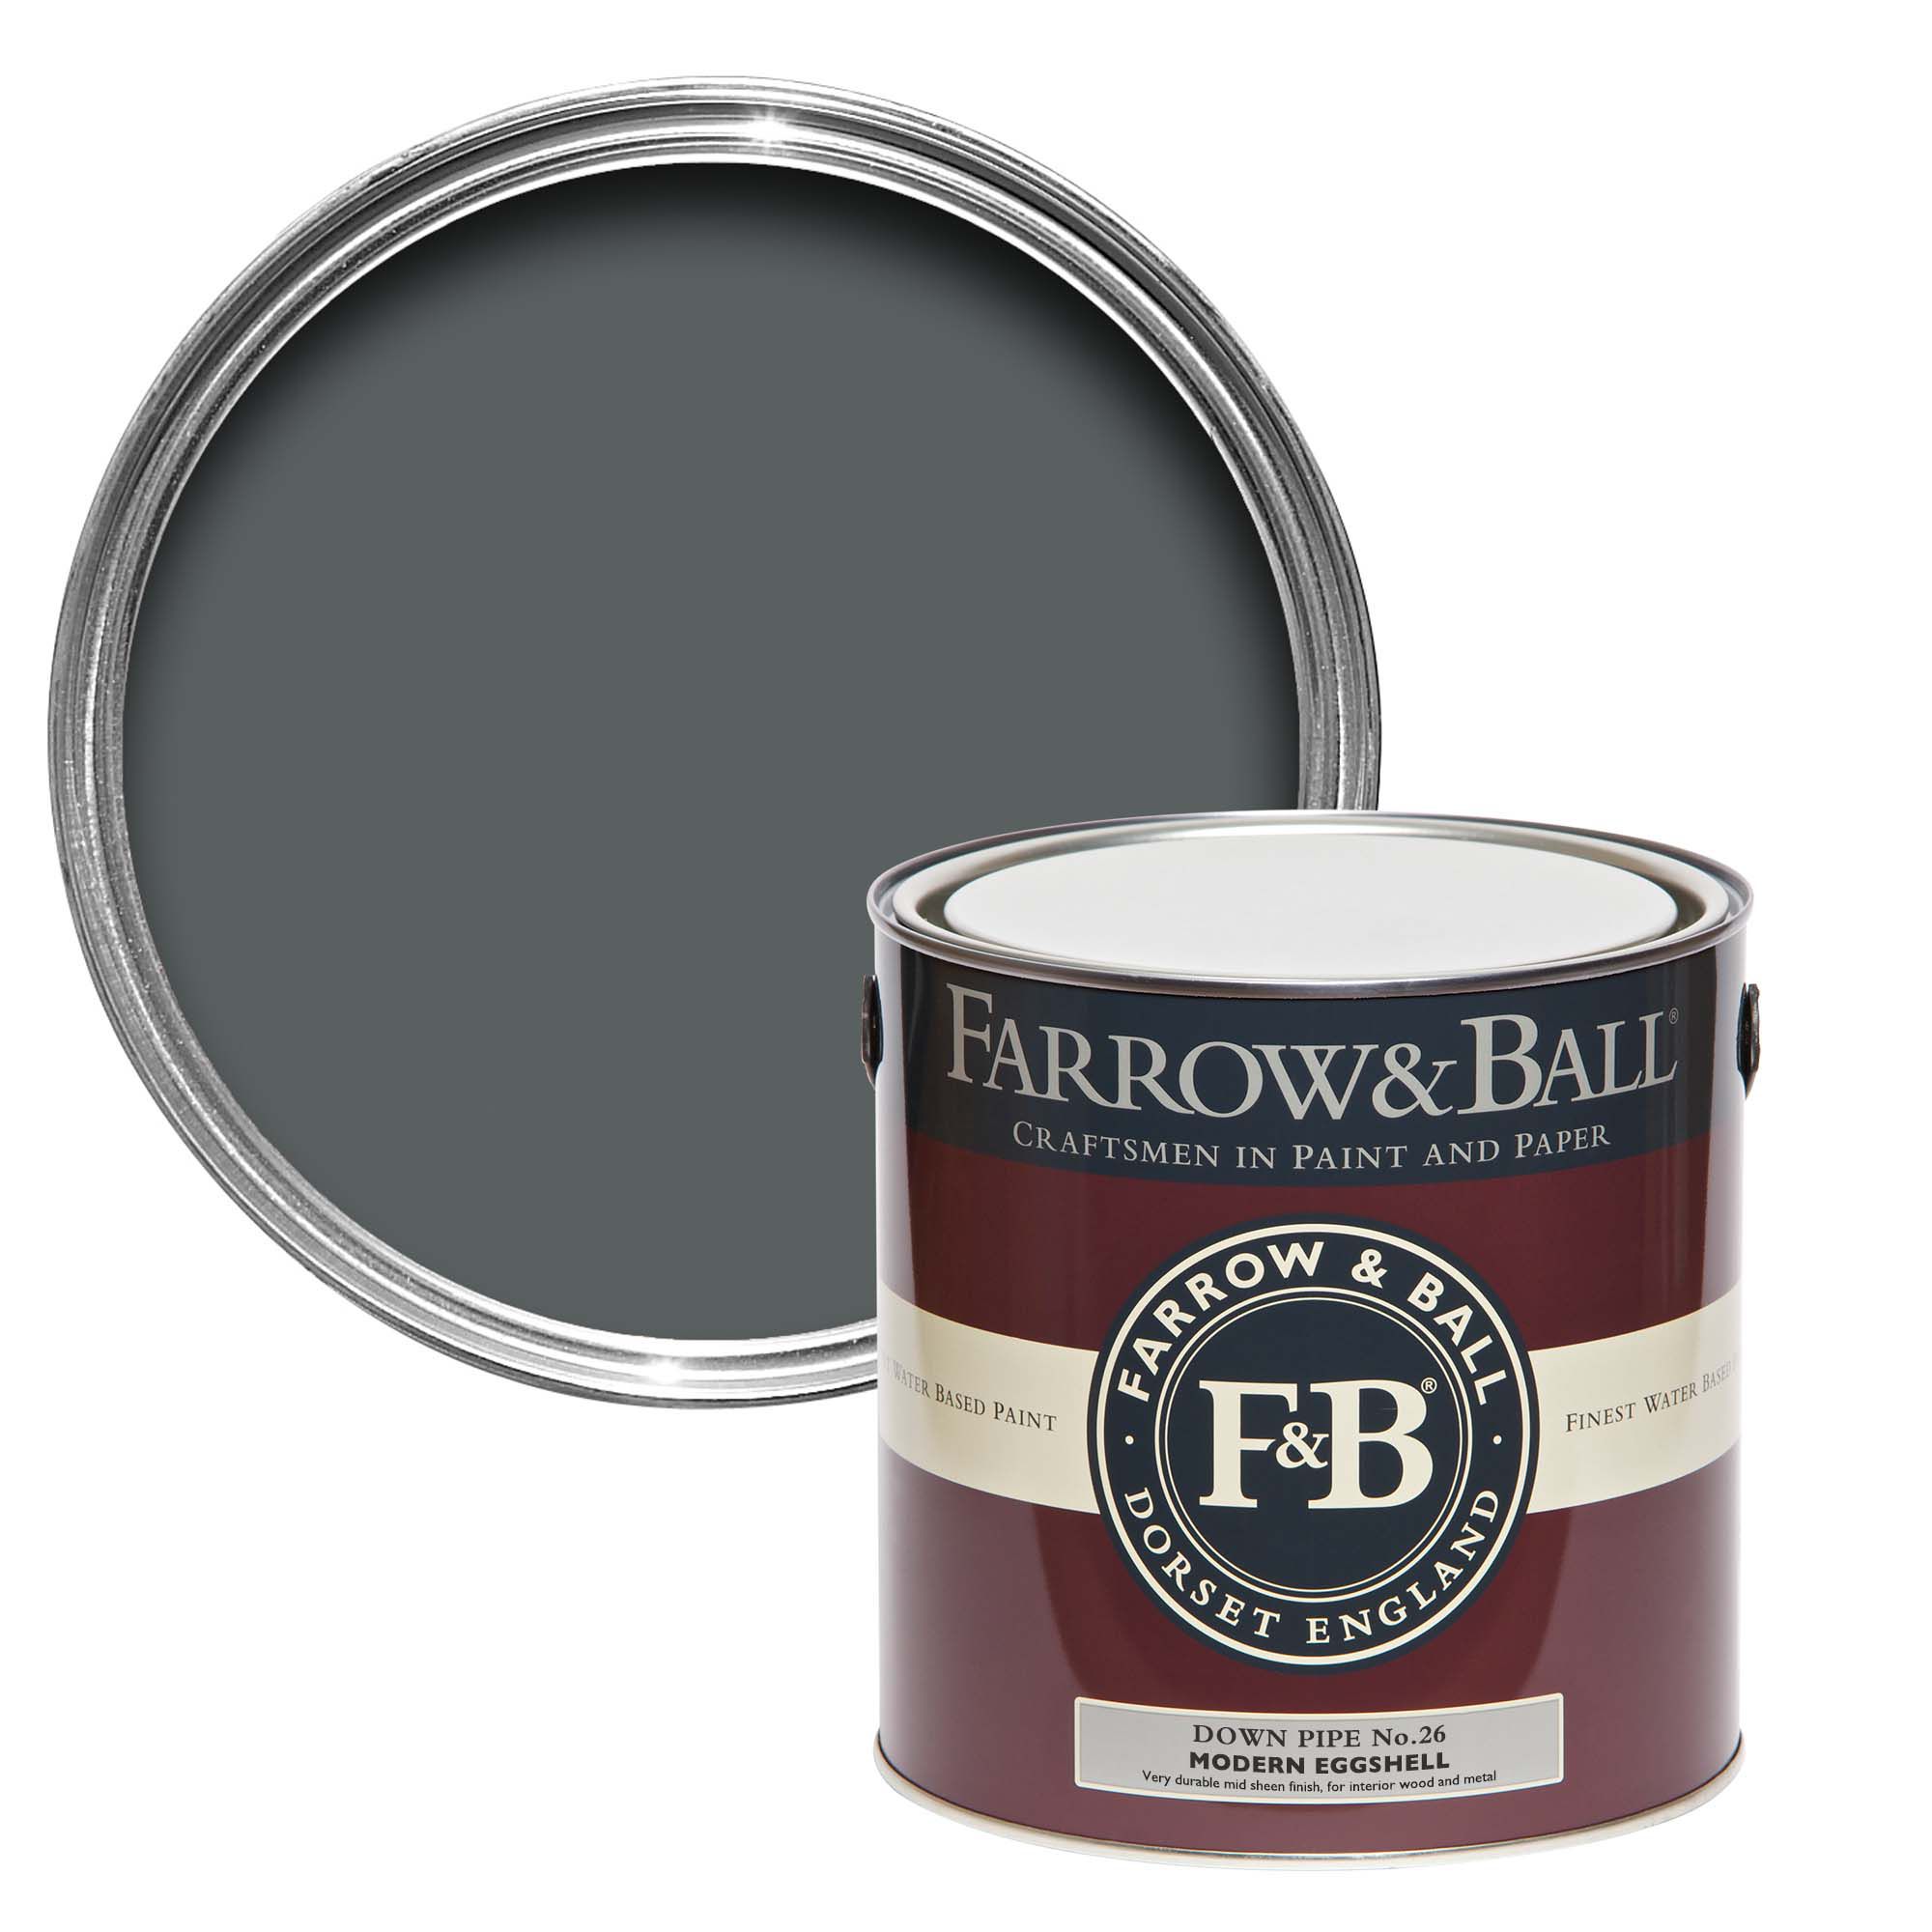 Farrow & Ball Modern Down Pipe No.26 Eggshell Paint, 2.5L